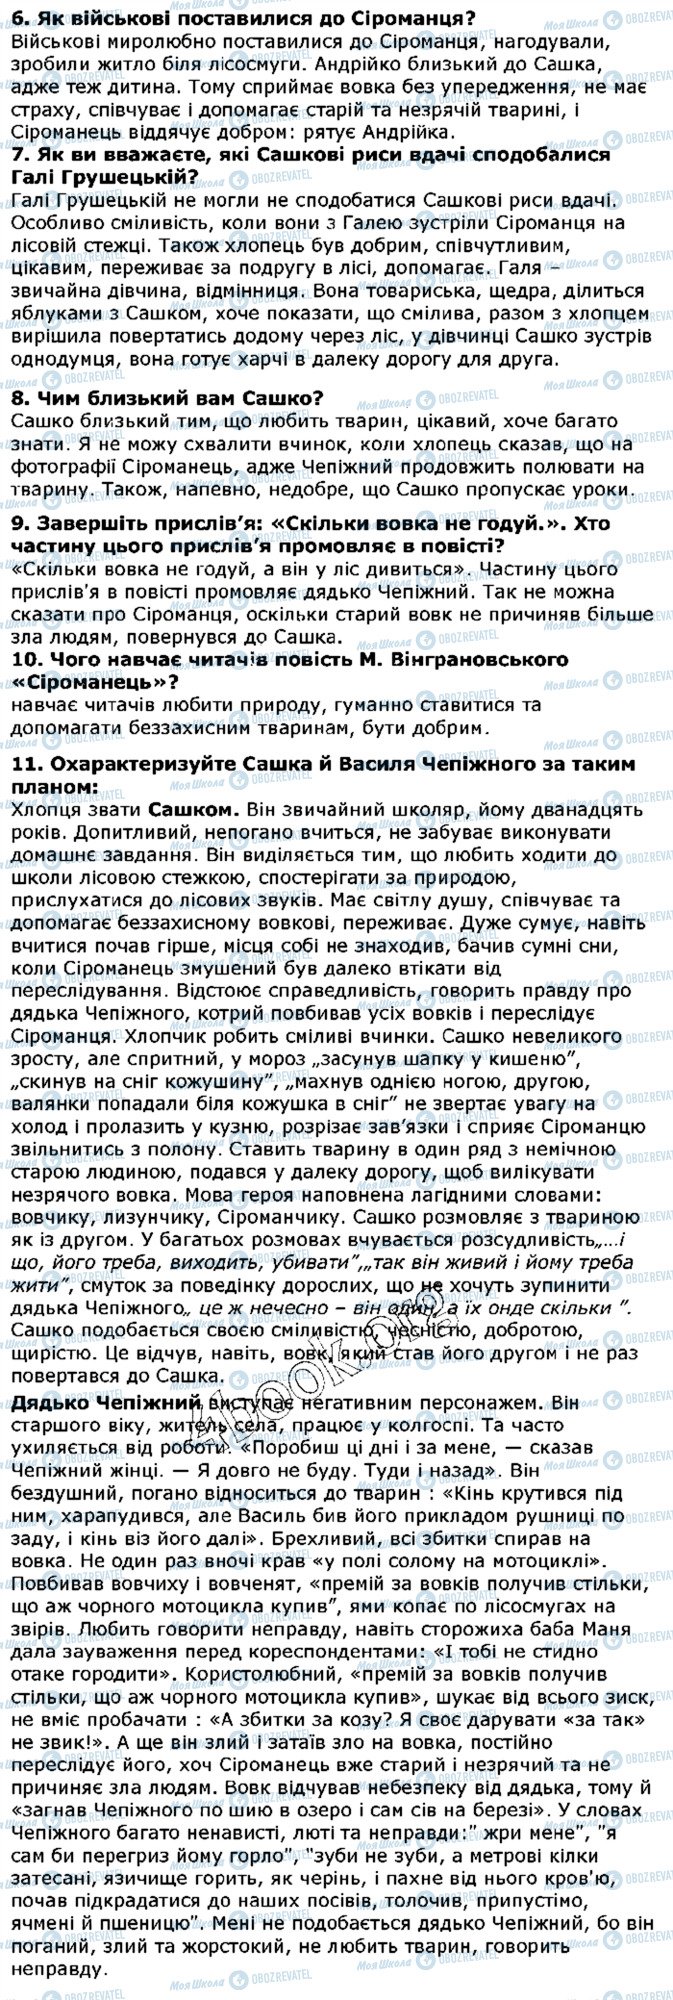 ГДЗ Українська література 5 клас сторінка ст248